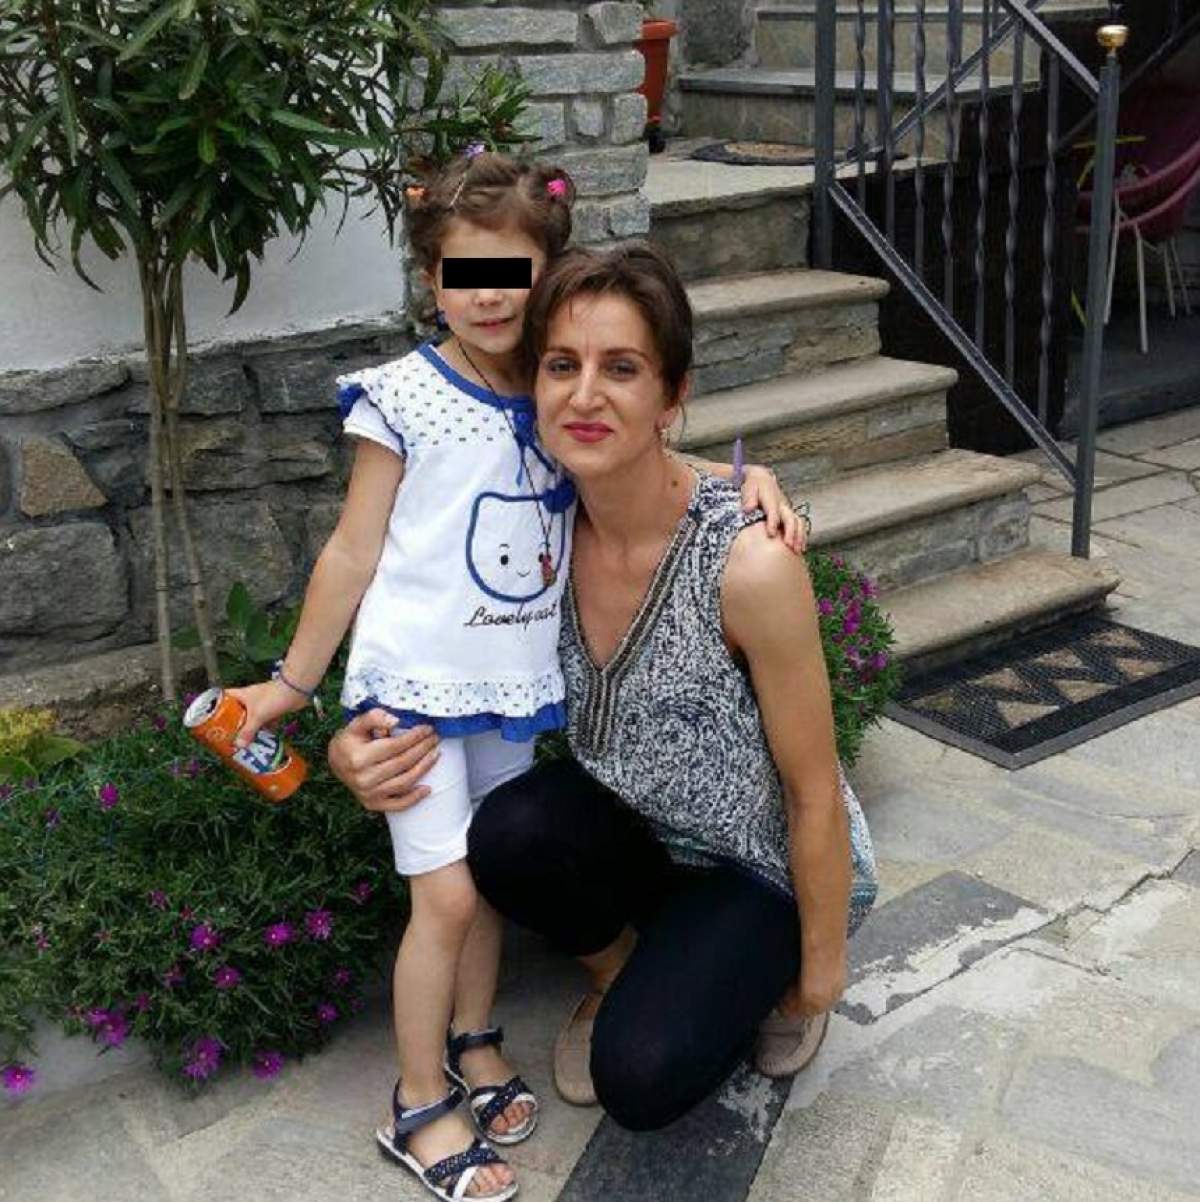 VIDEO / Crimă înfiorătoare în oraşul Torino! O româncă şi-a înjunghiat mortal fetiţa de 6 ani şi apoi s-a sinucis